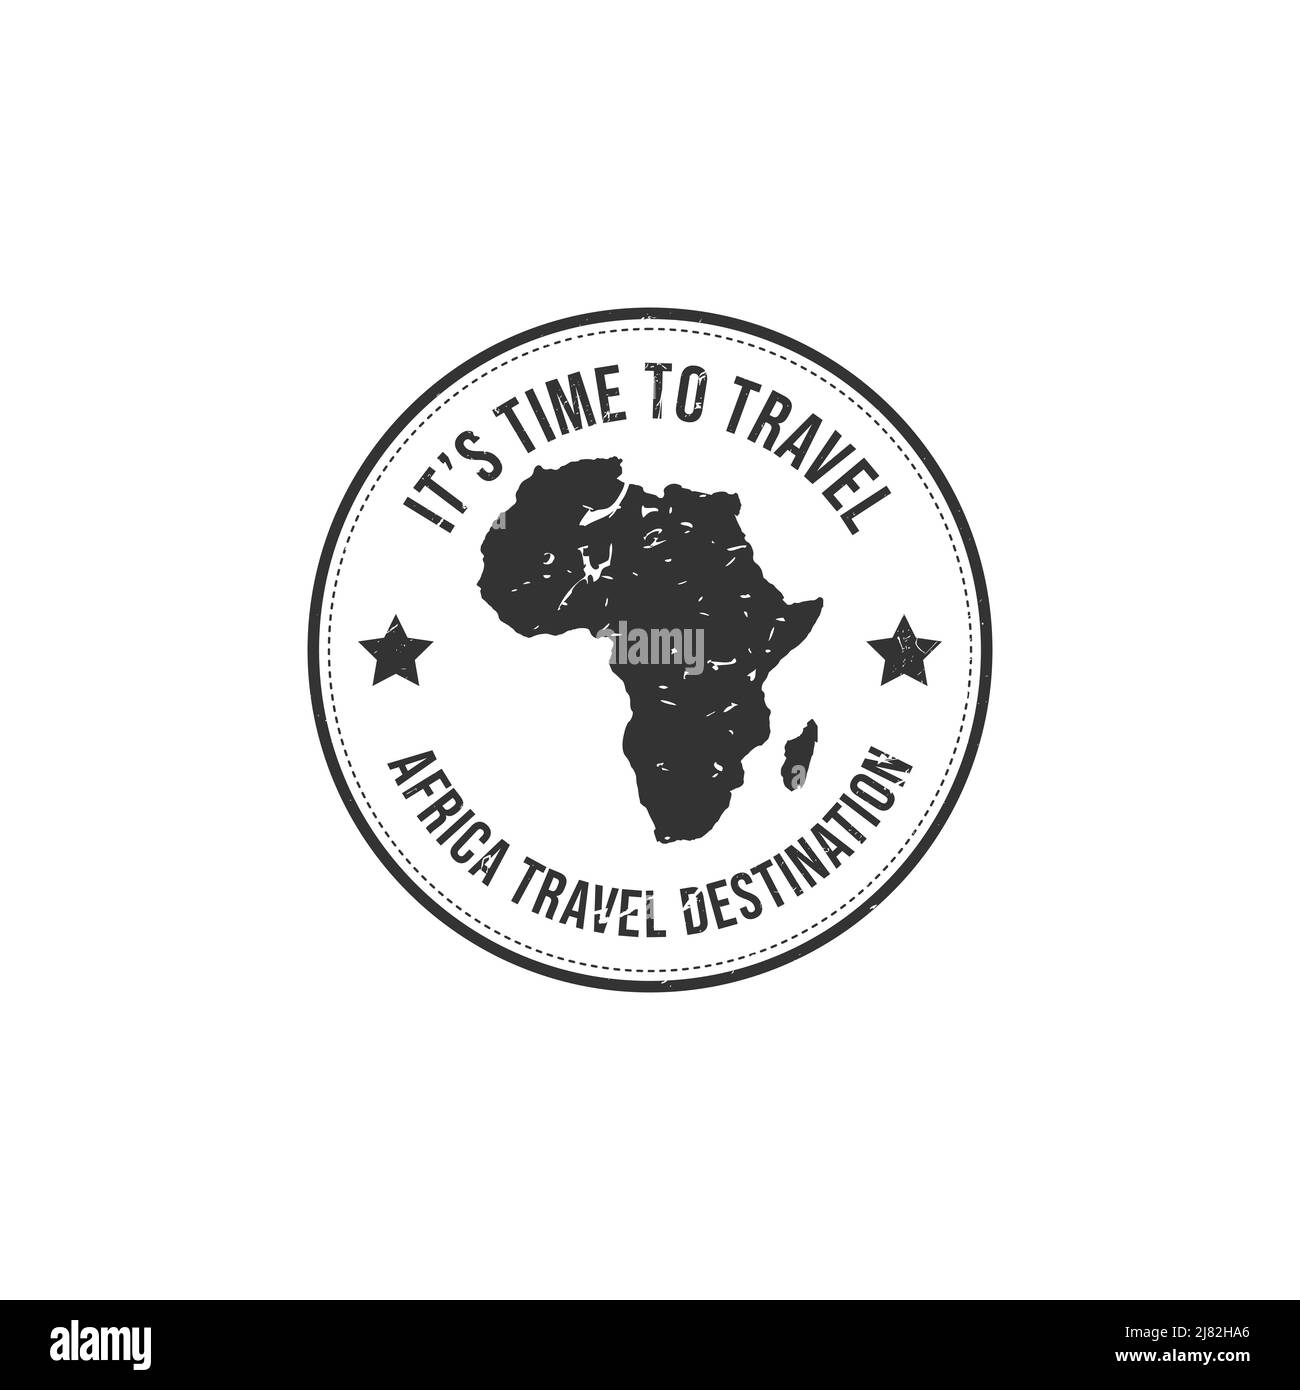 Gratrez le tampon en caoutchouc avec le texte icône Afrique carte destination de voyage inscrit à l'intérieur du tampon. Destination voyage Afrique timbre caoutchouc grunge Illustration de Vecteur